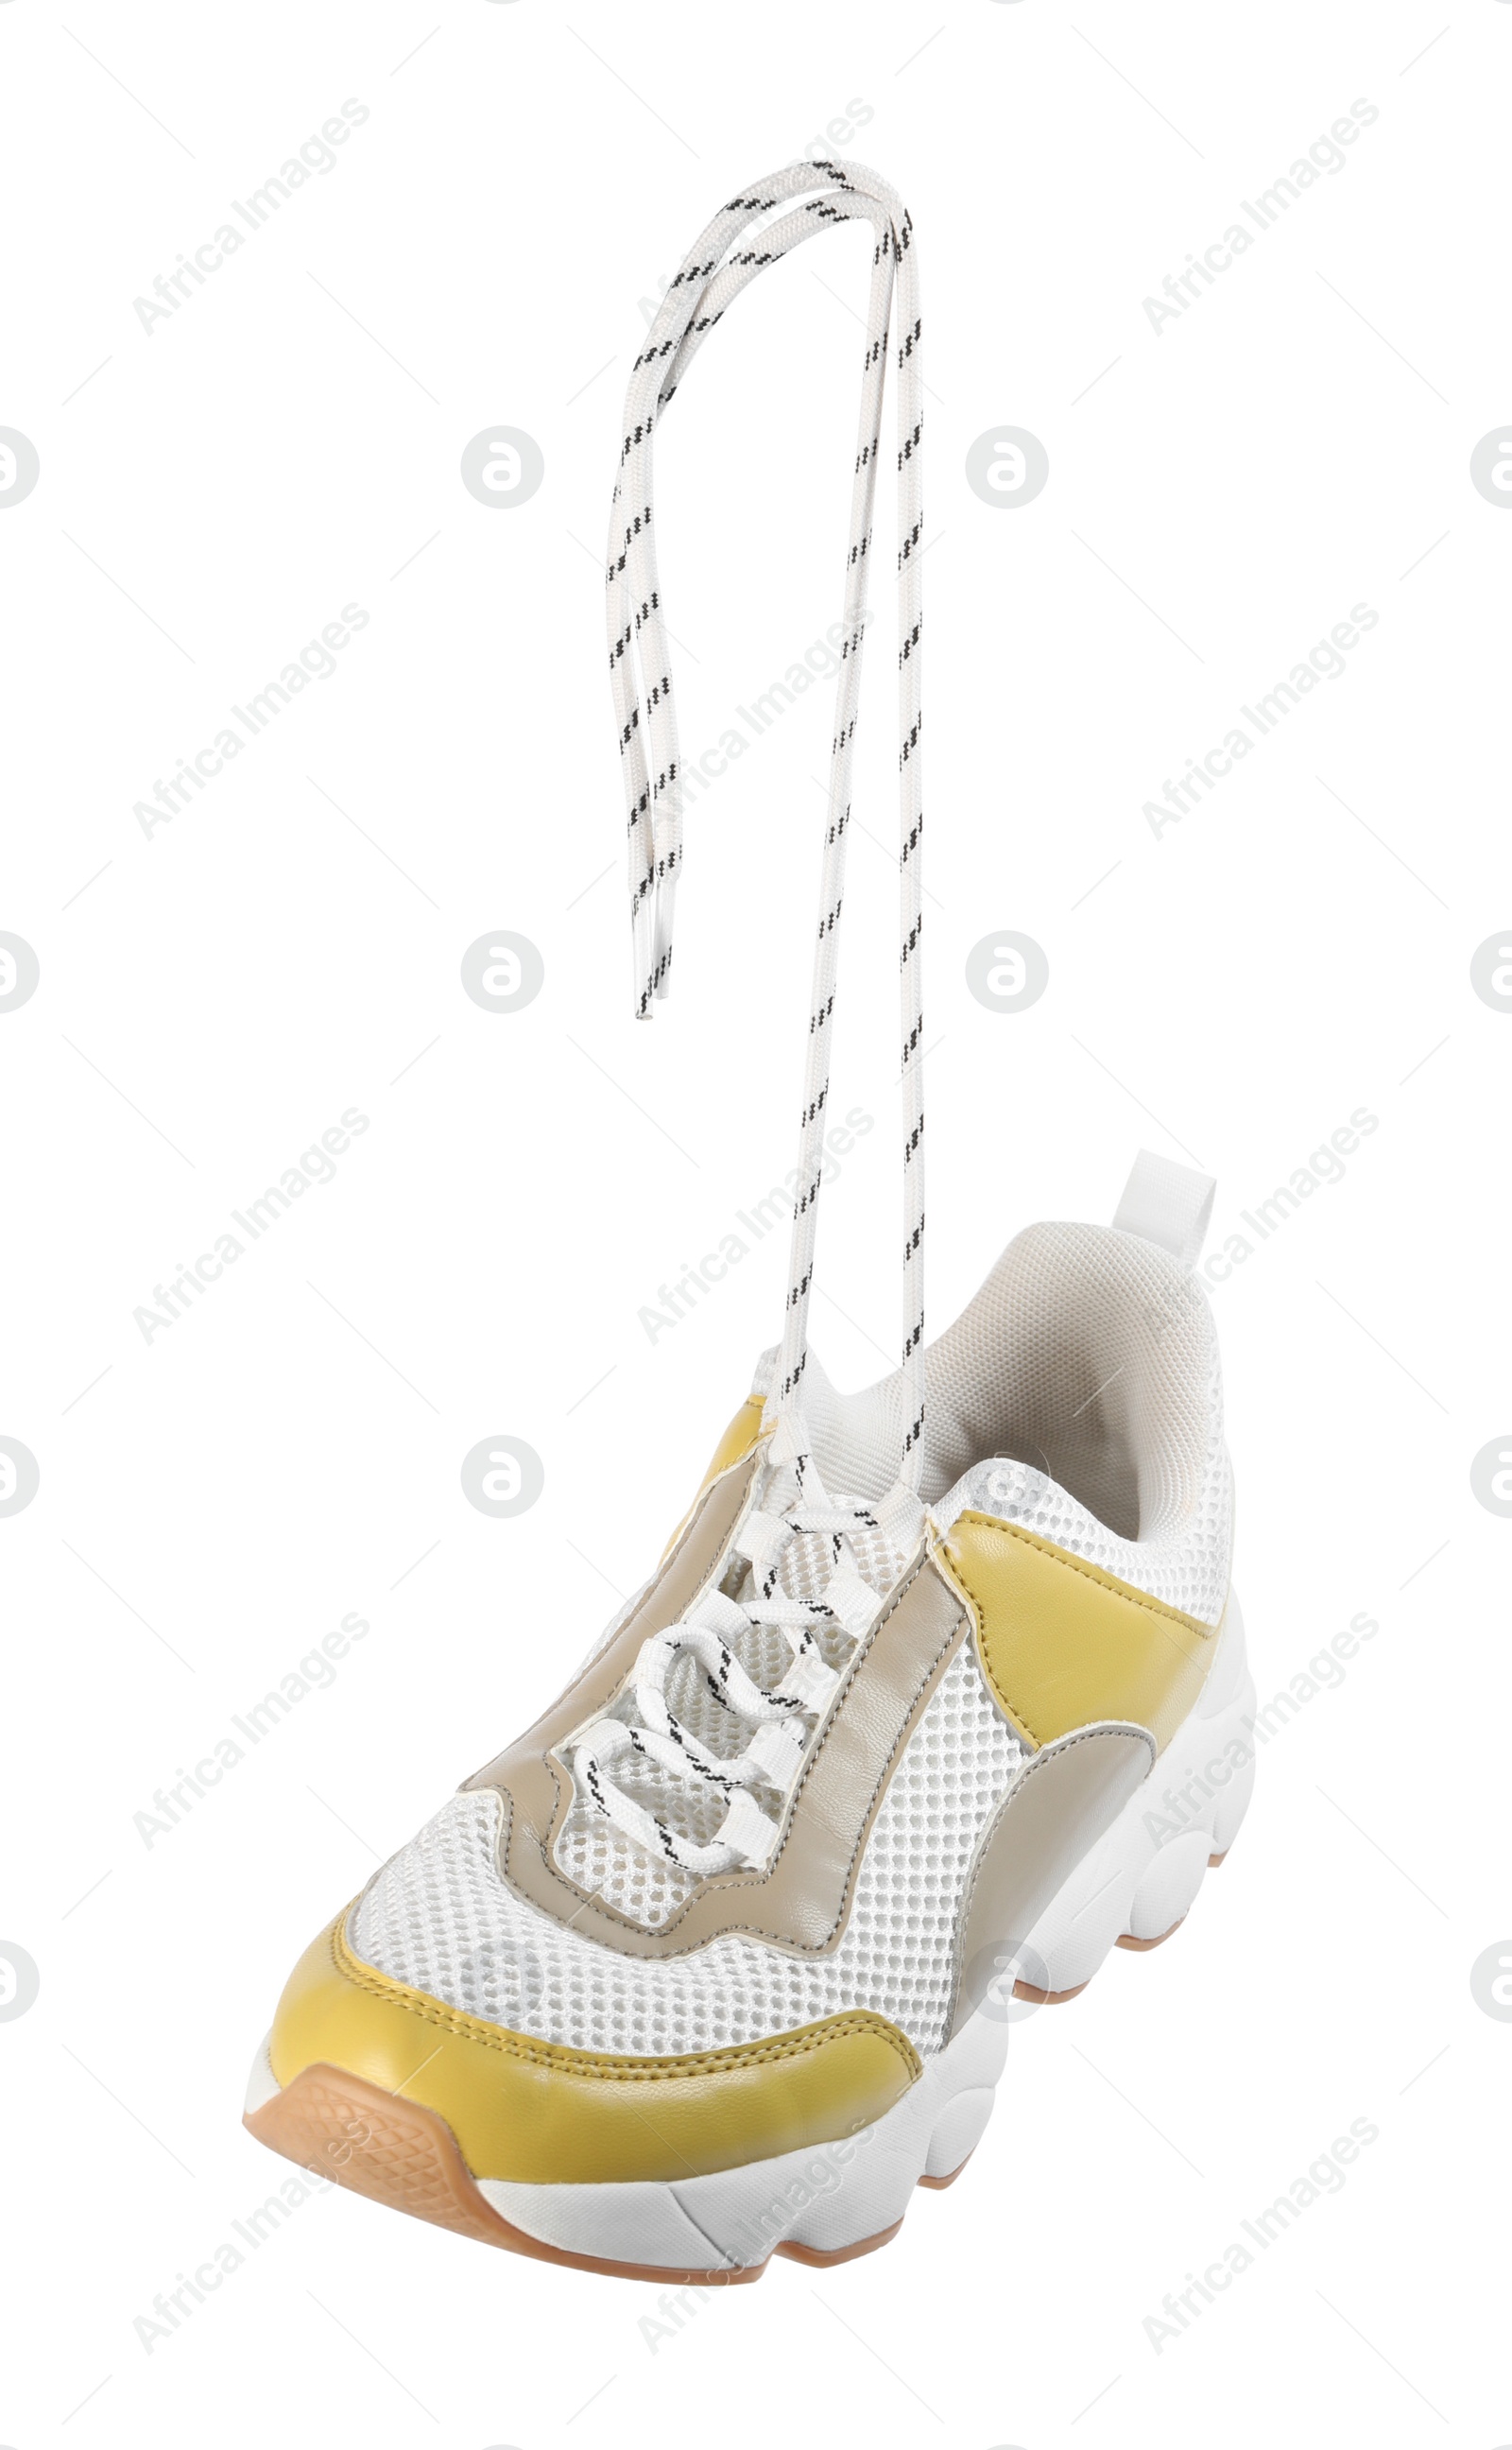 Photo of Stylish shoe with laces hanging on white background